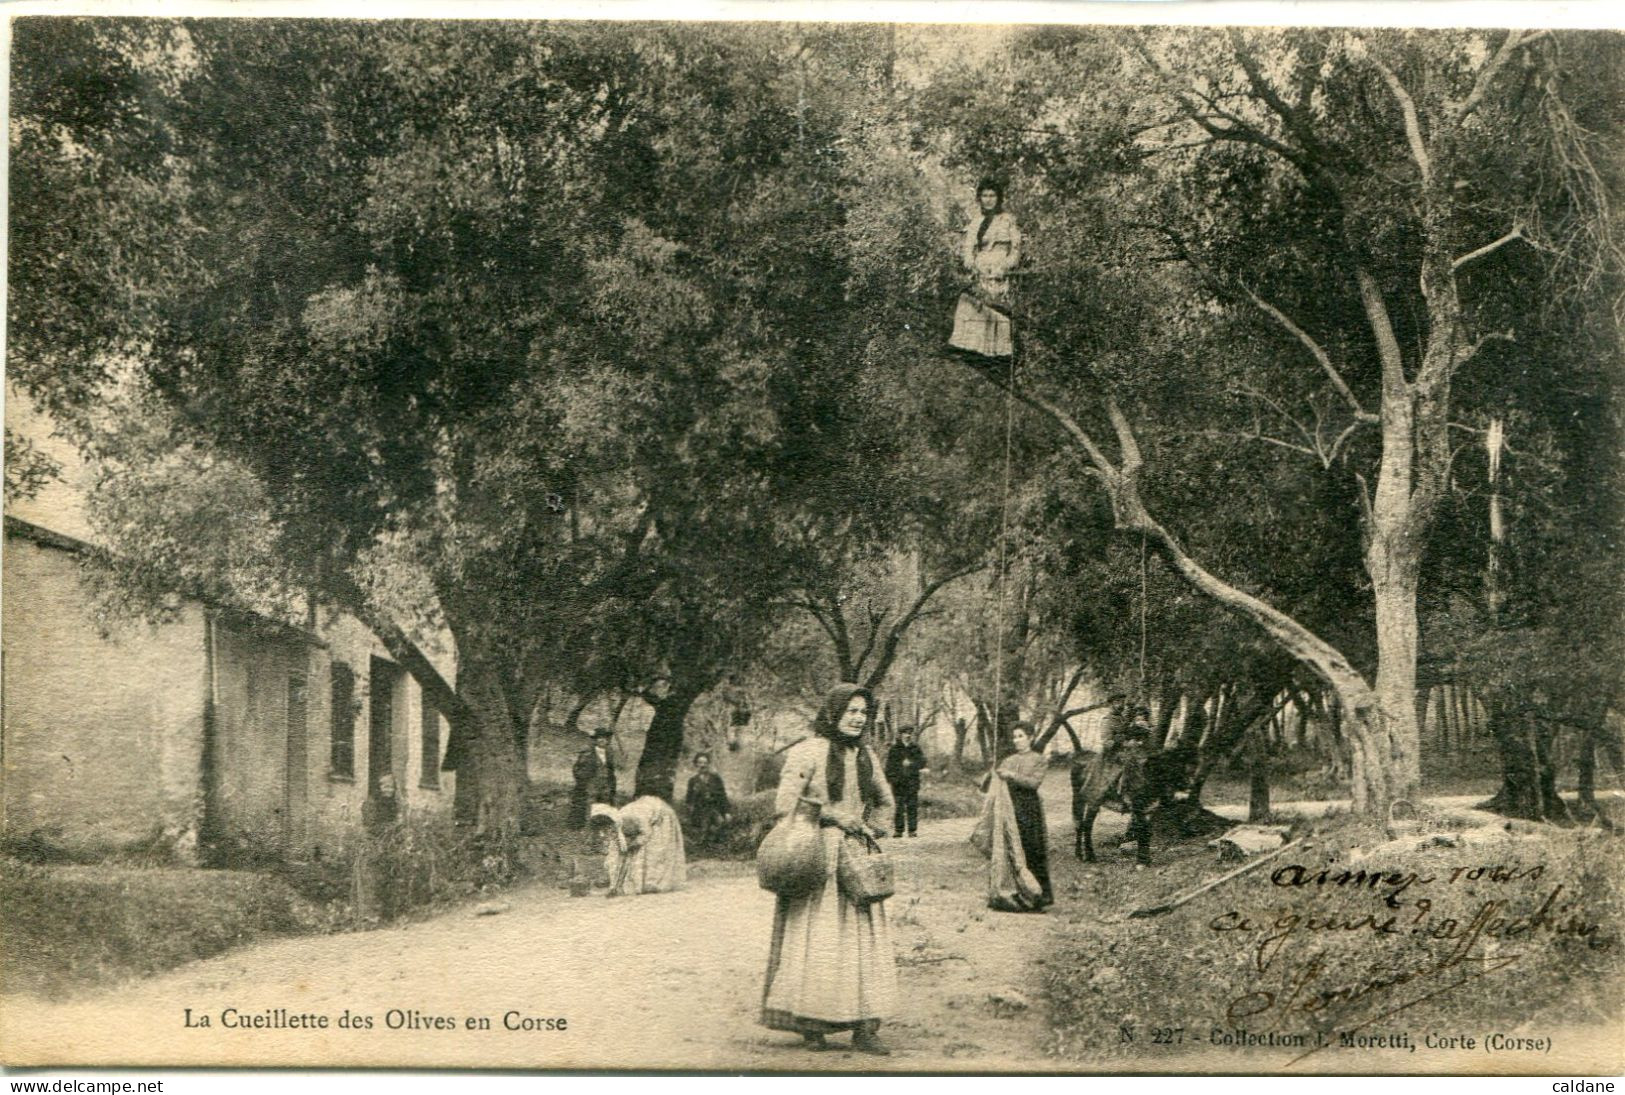 2A-CORSE  -  La Cueillette Des Olives En Corse        Collection J.Moretti,Corte - Culture